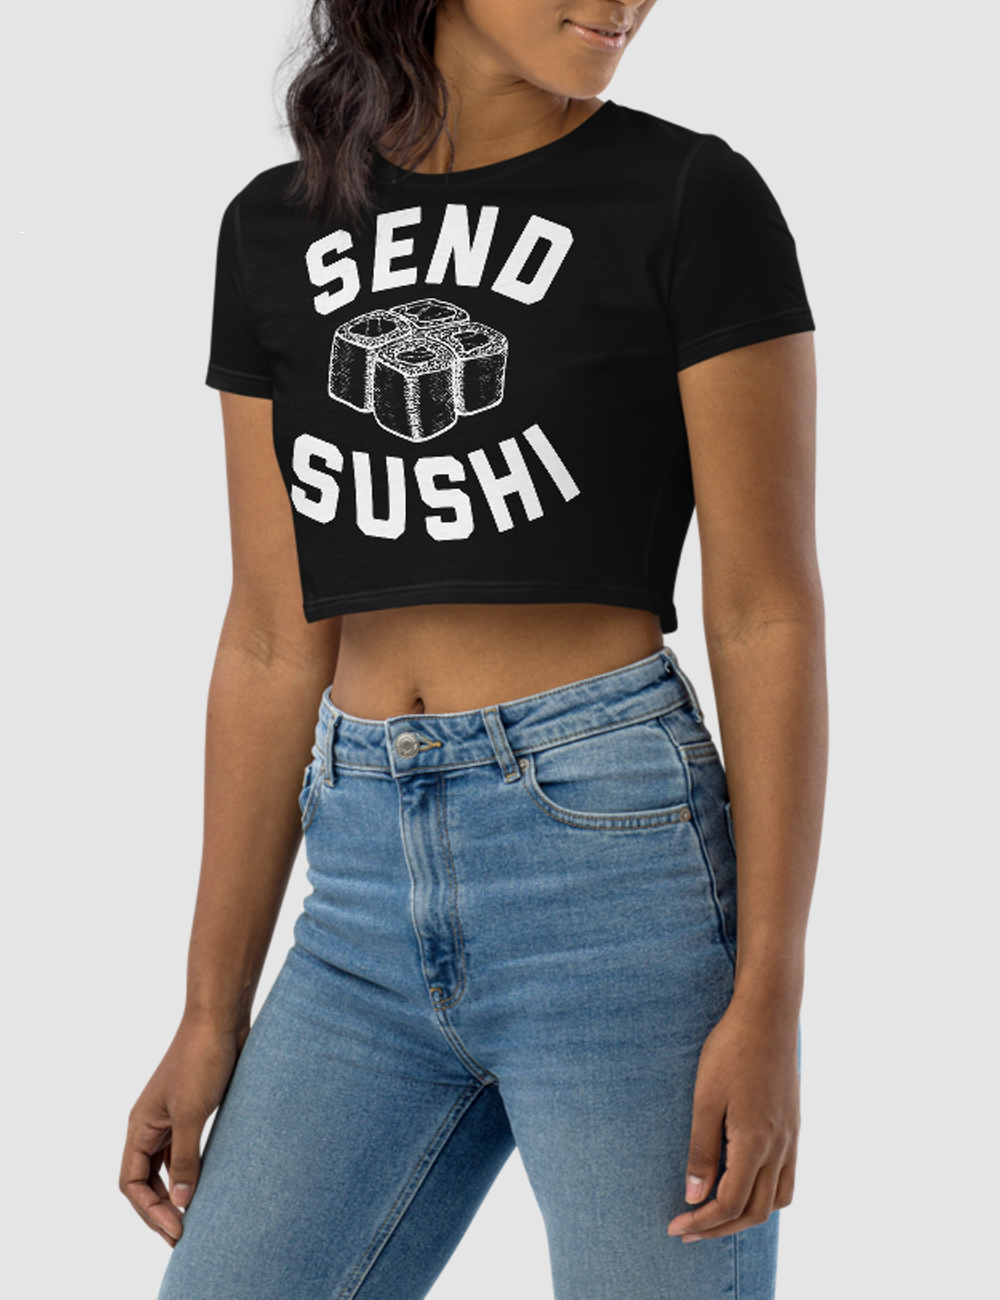 Send Sushi | Women's Crop Top T-Shirt OniTakai